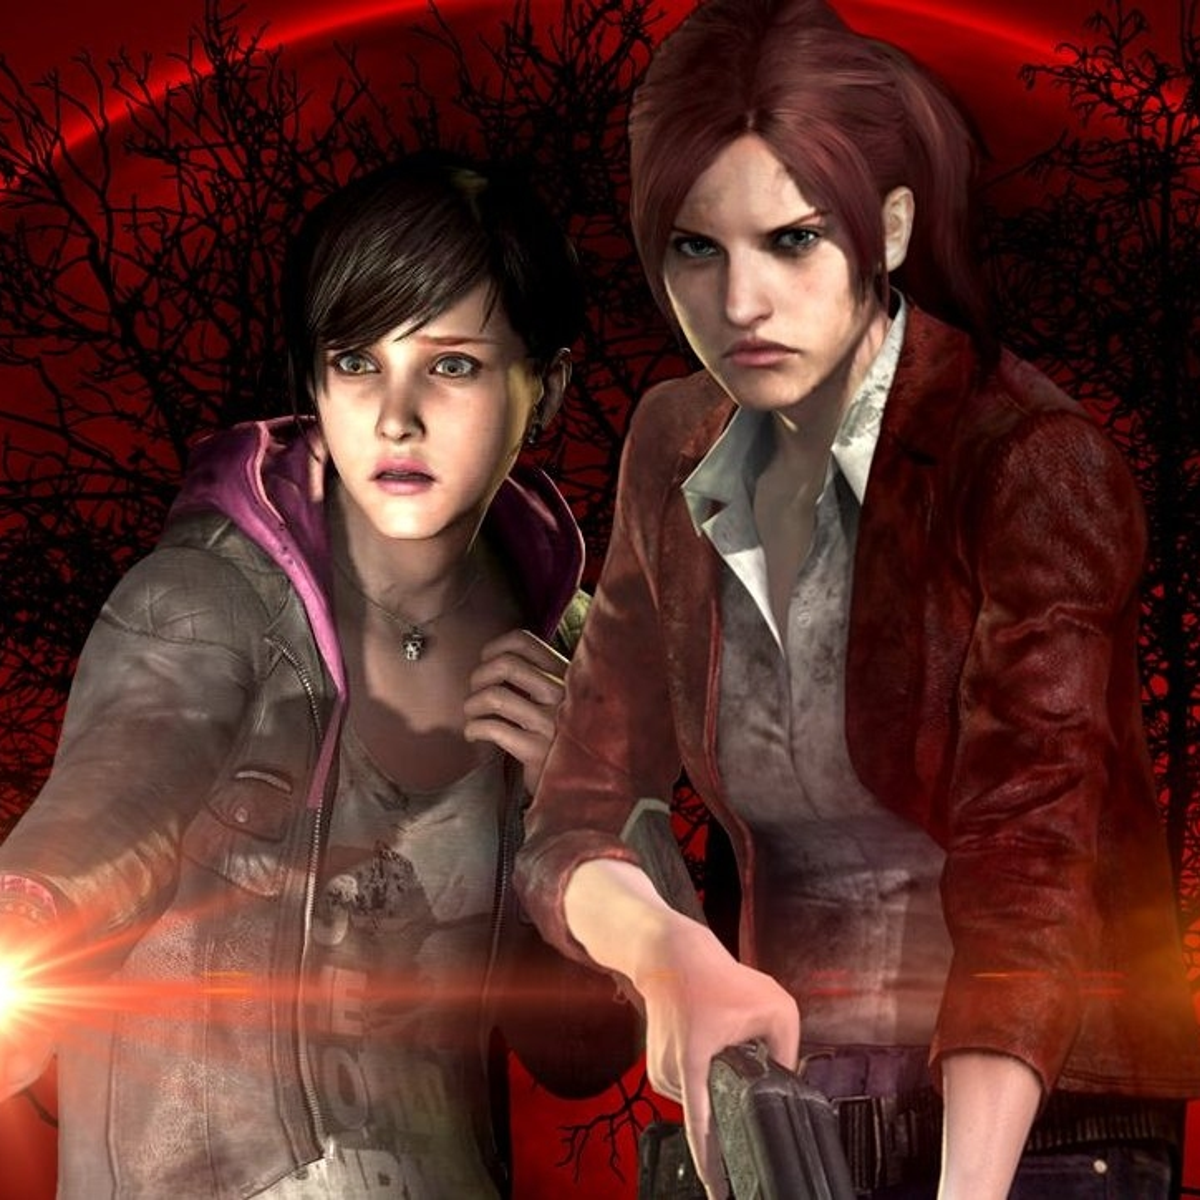 Resident Evil Revelations 2 - Episode 3 walkthrough